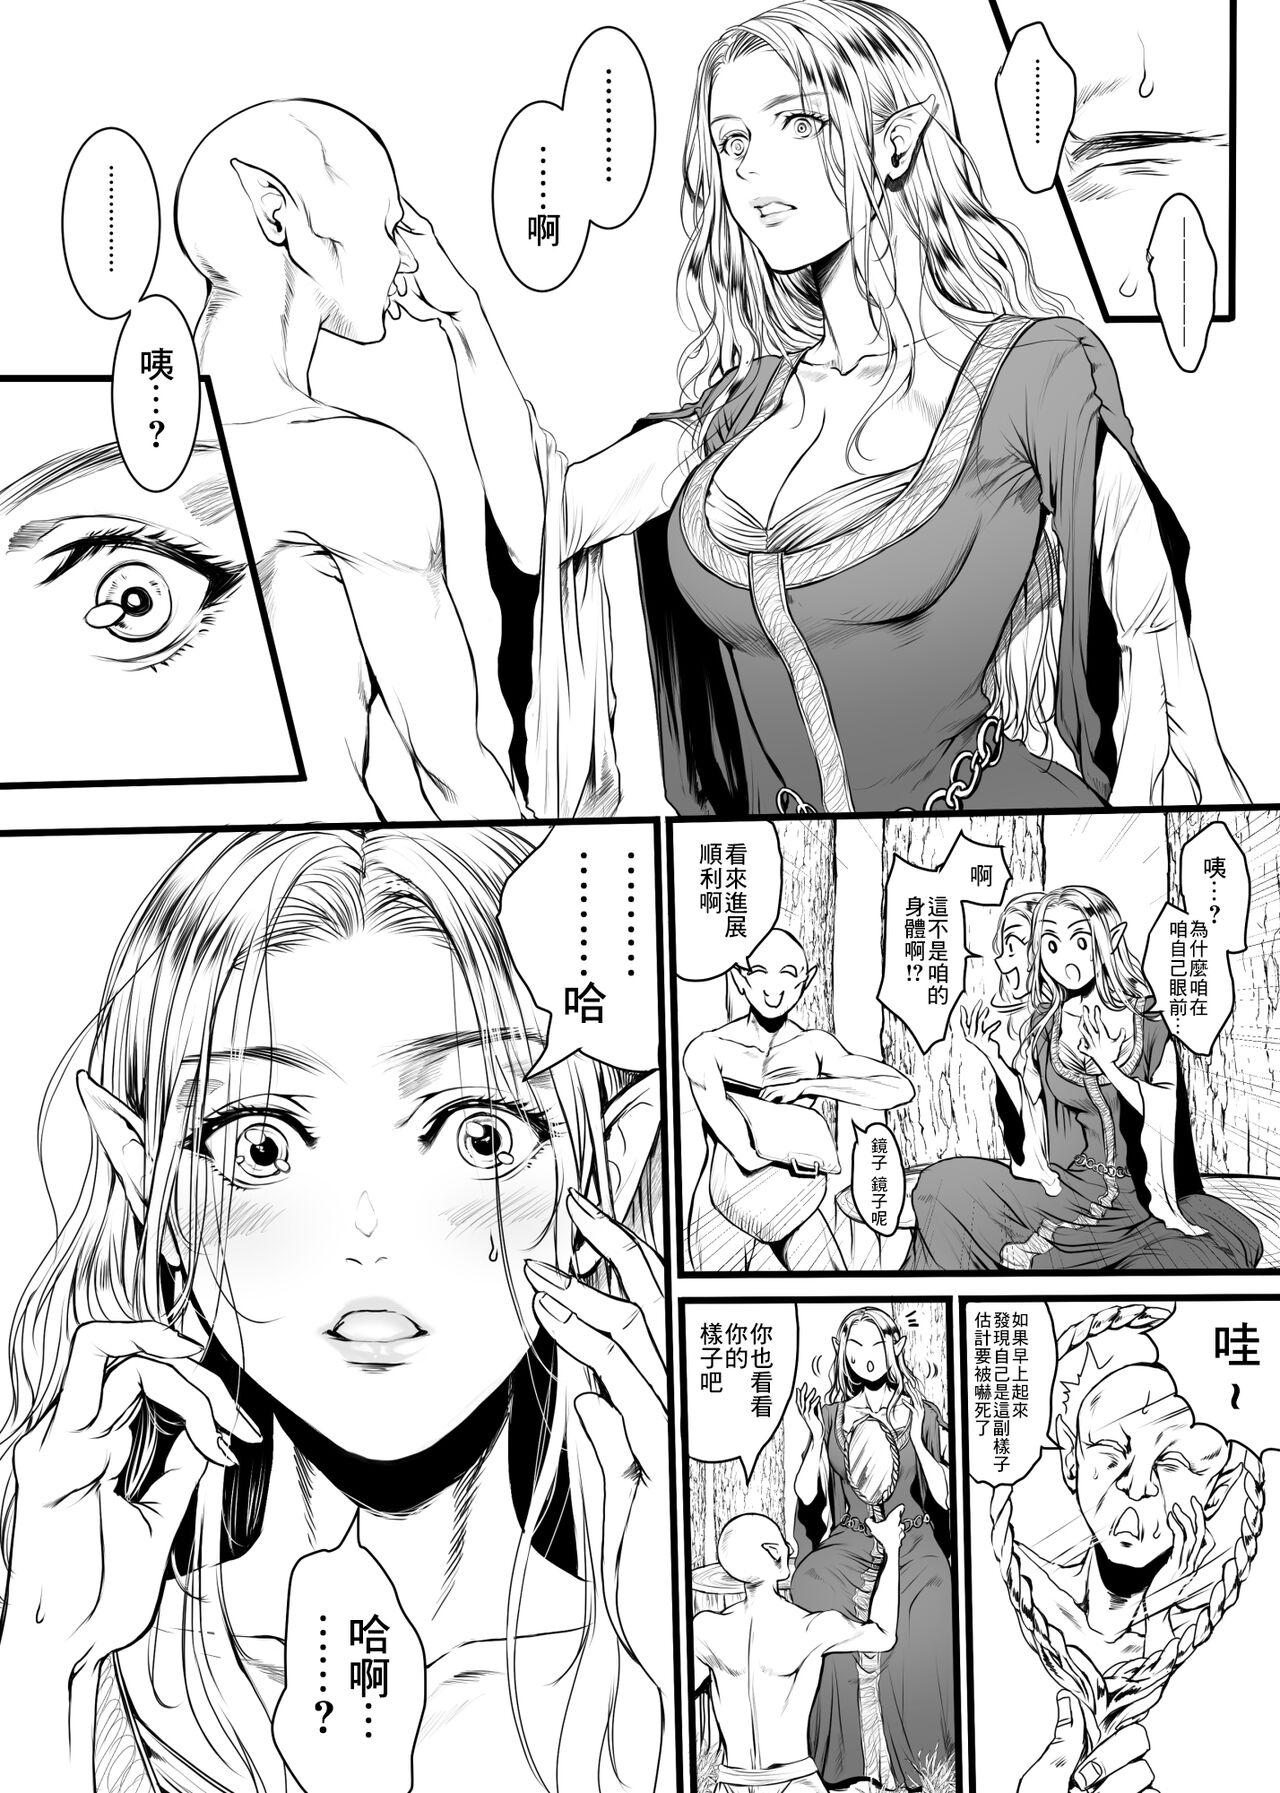 18yearsold Kansei o Akiramta TSF Manga - Original Perfect Tits - Picture 3